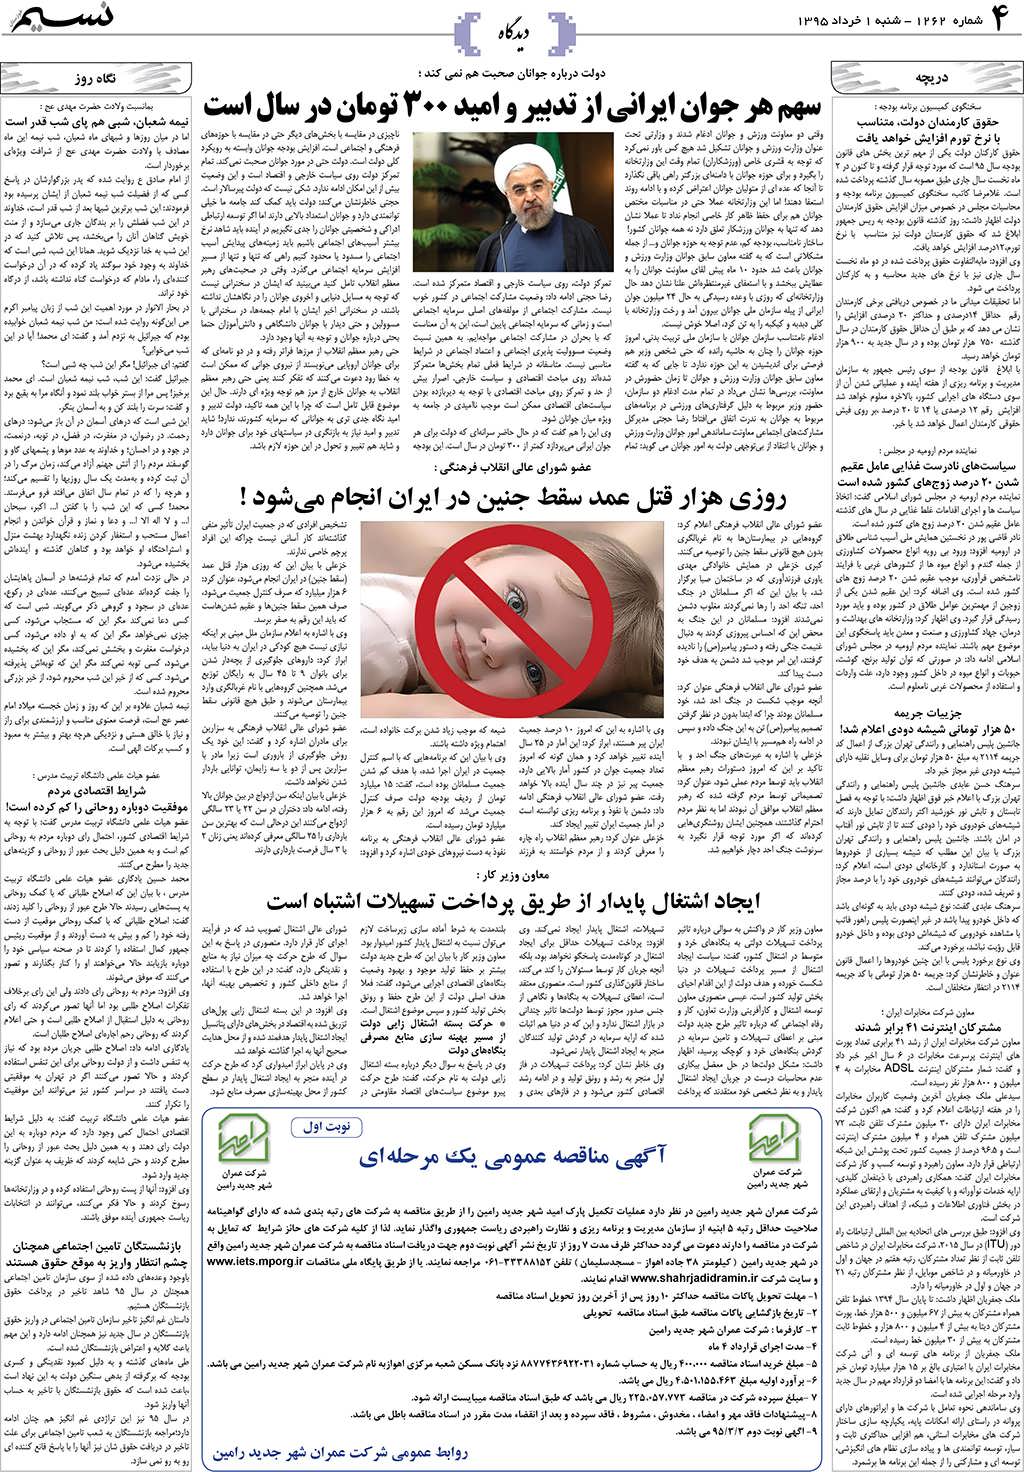 صفحه دیدگاه روزنامه نسیم شماره 1262